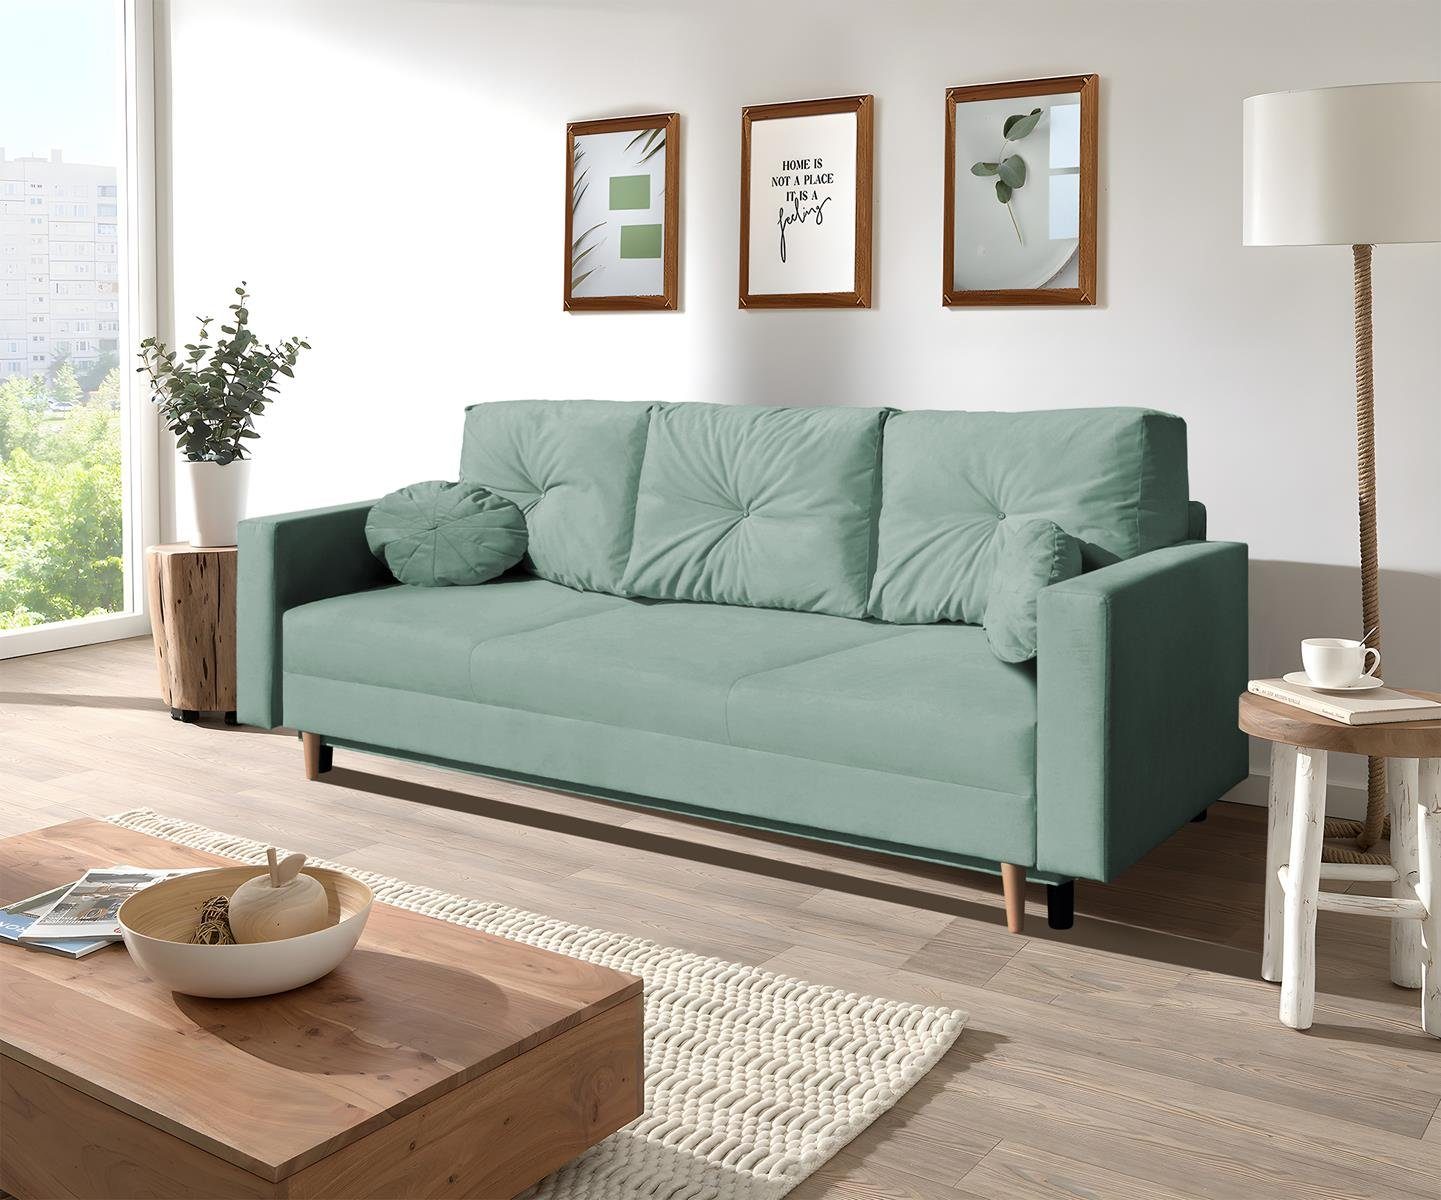 Beautysofa 3-Sitzer MILAN, skandinavisches Design, Wellenunterfederung, Bettkasten, Holzbeine, 3-Sitzer Sofa mit Relaxfunktion Mint (trinity 21)